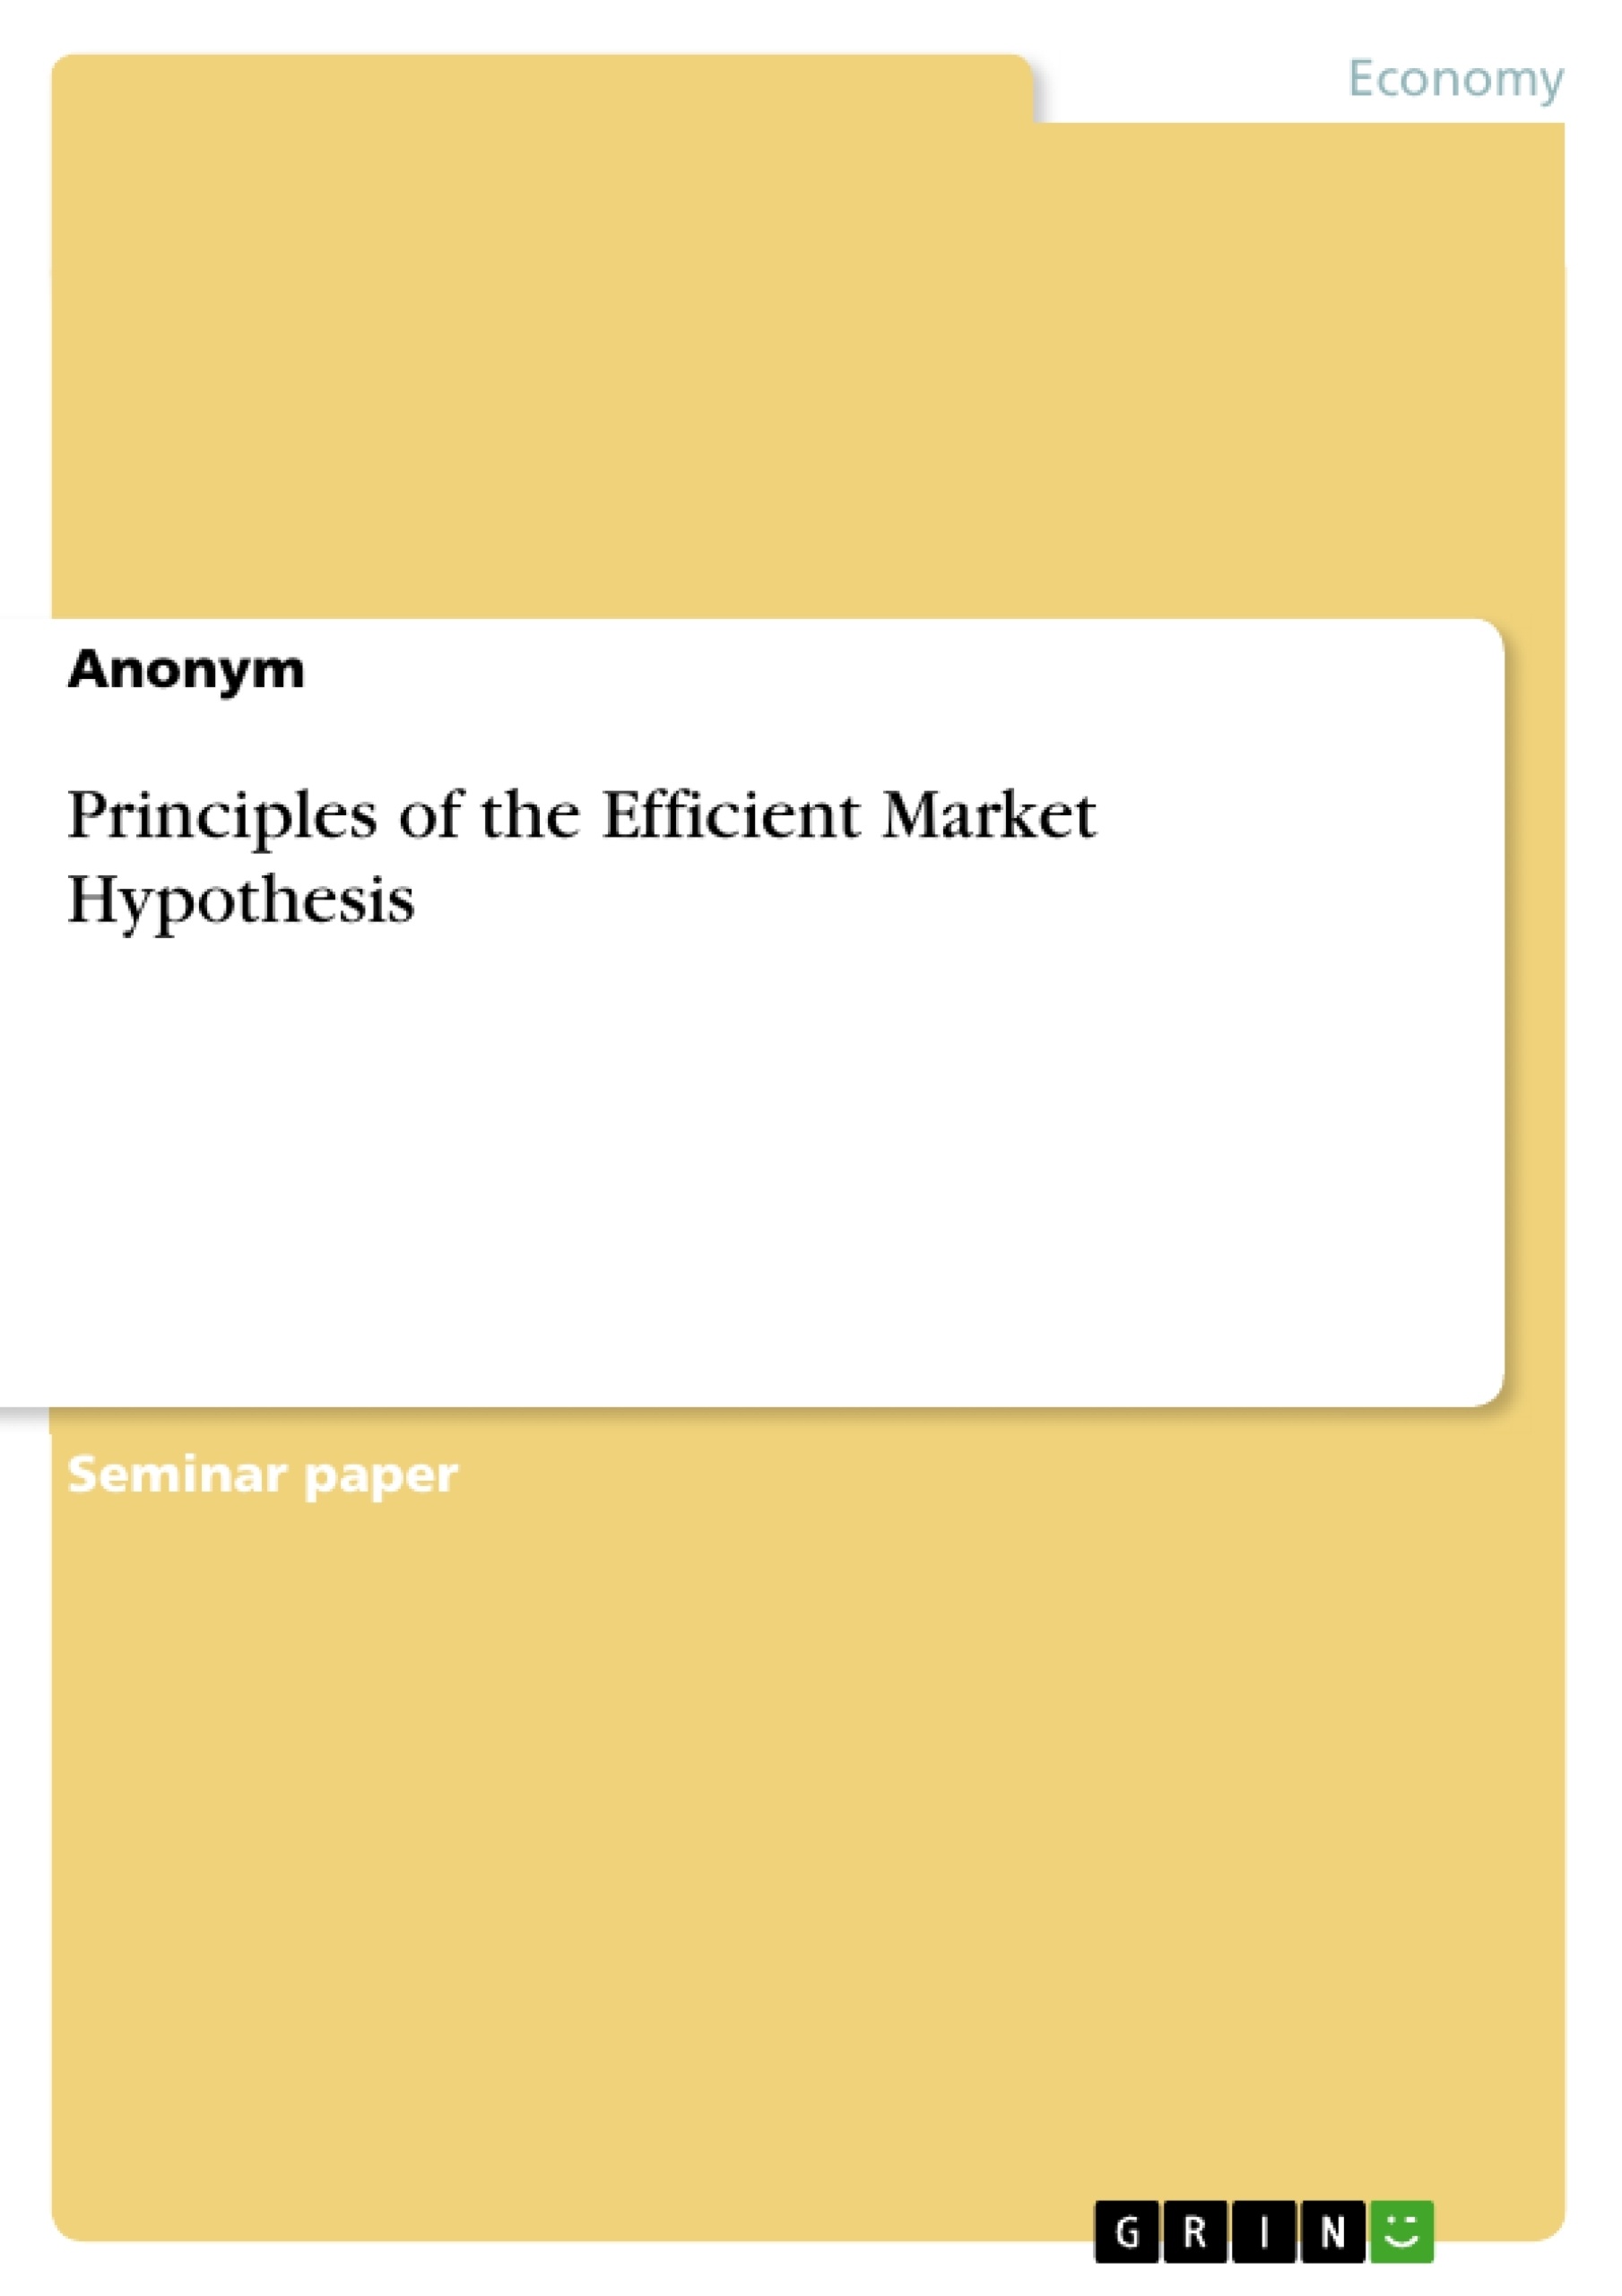 Title: Principles of the Efficient Market Hypothesis